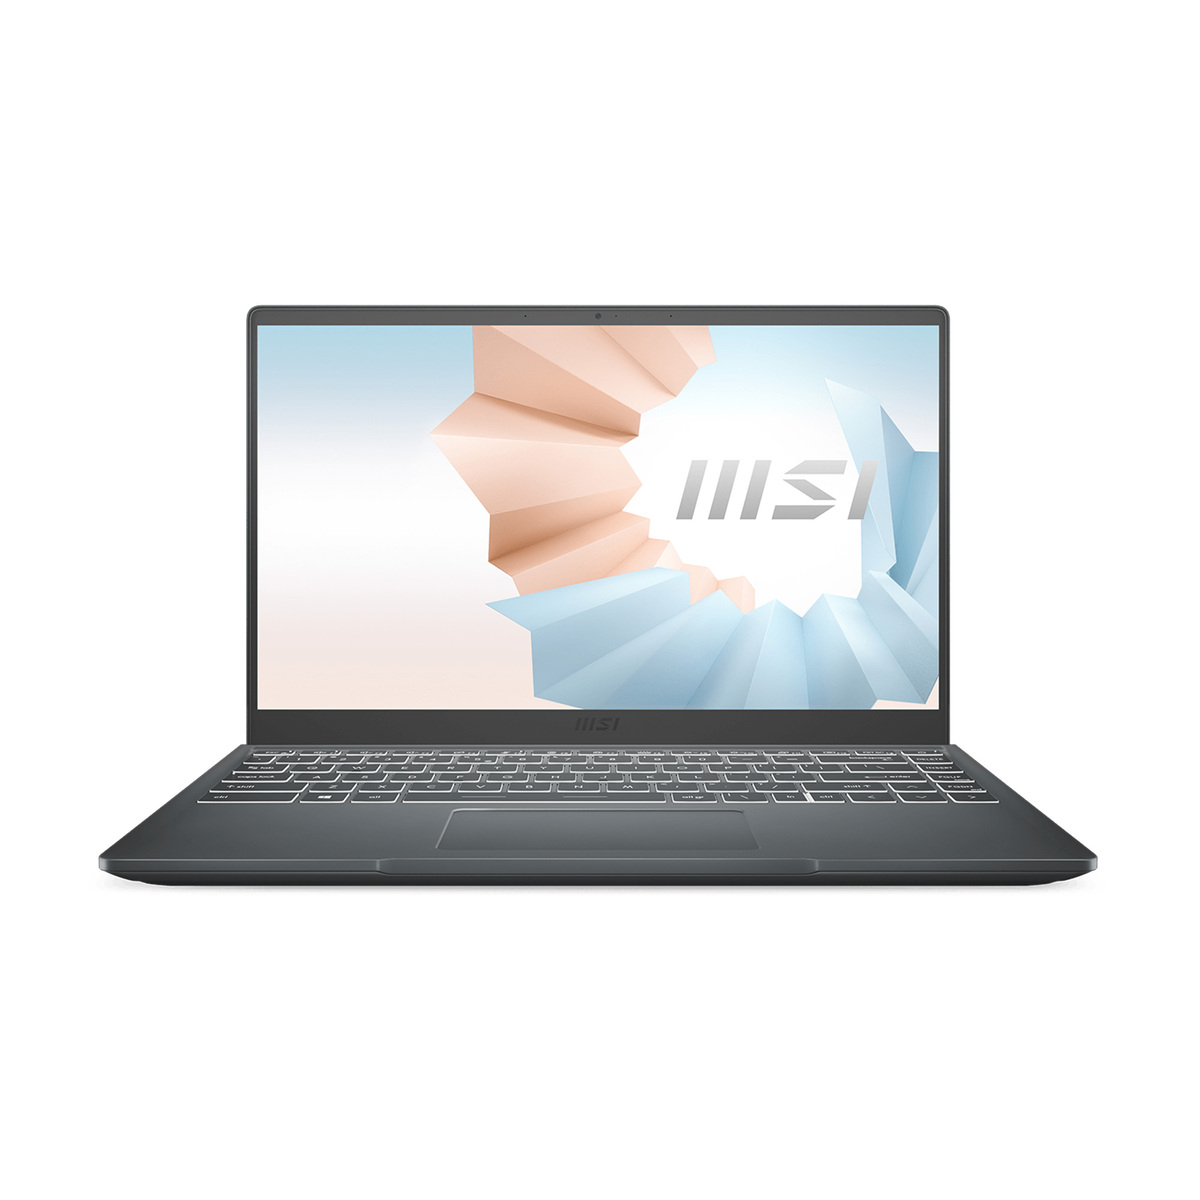 MSI Notebook 9S7-14DL24-073 AMD Ryzen 5, 14" FHD, 8GB RAM, 512GB SSD, Windows 10